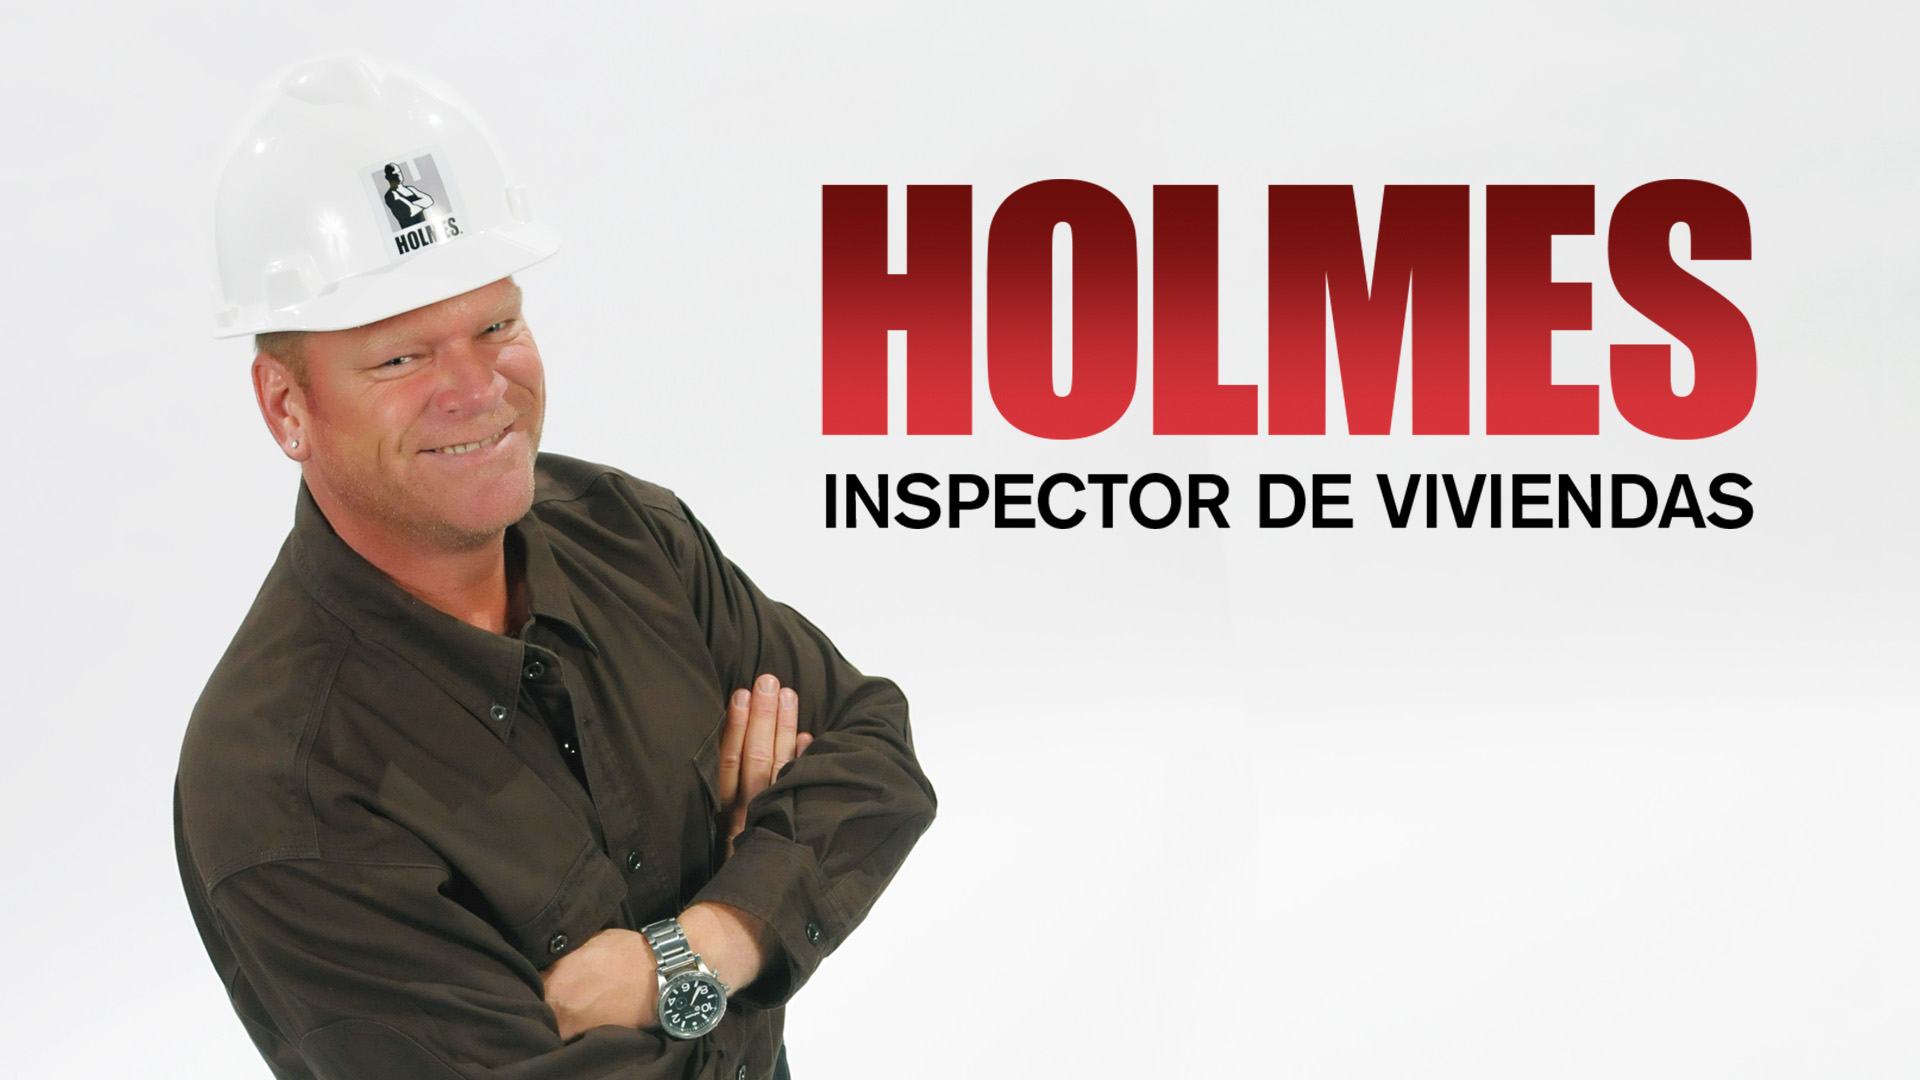 Holmes - Inspector de viviendas